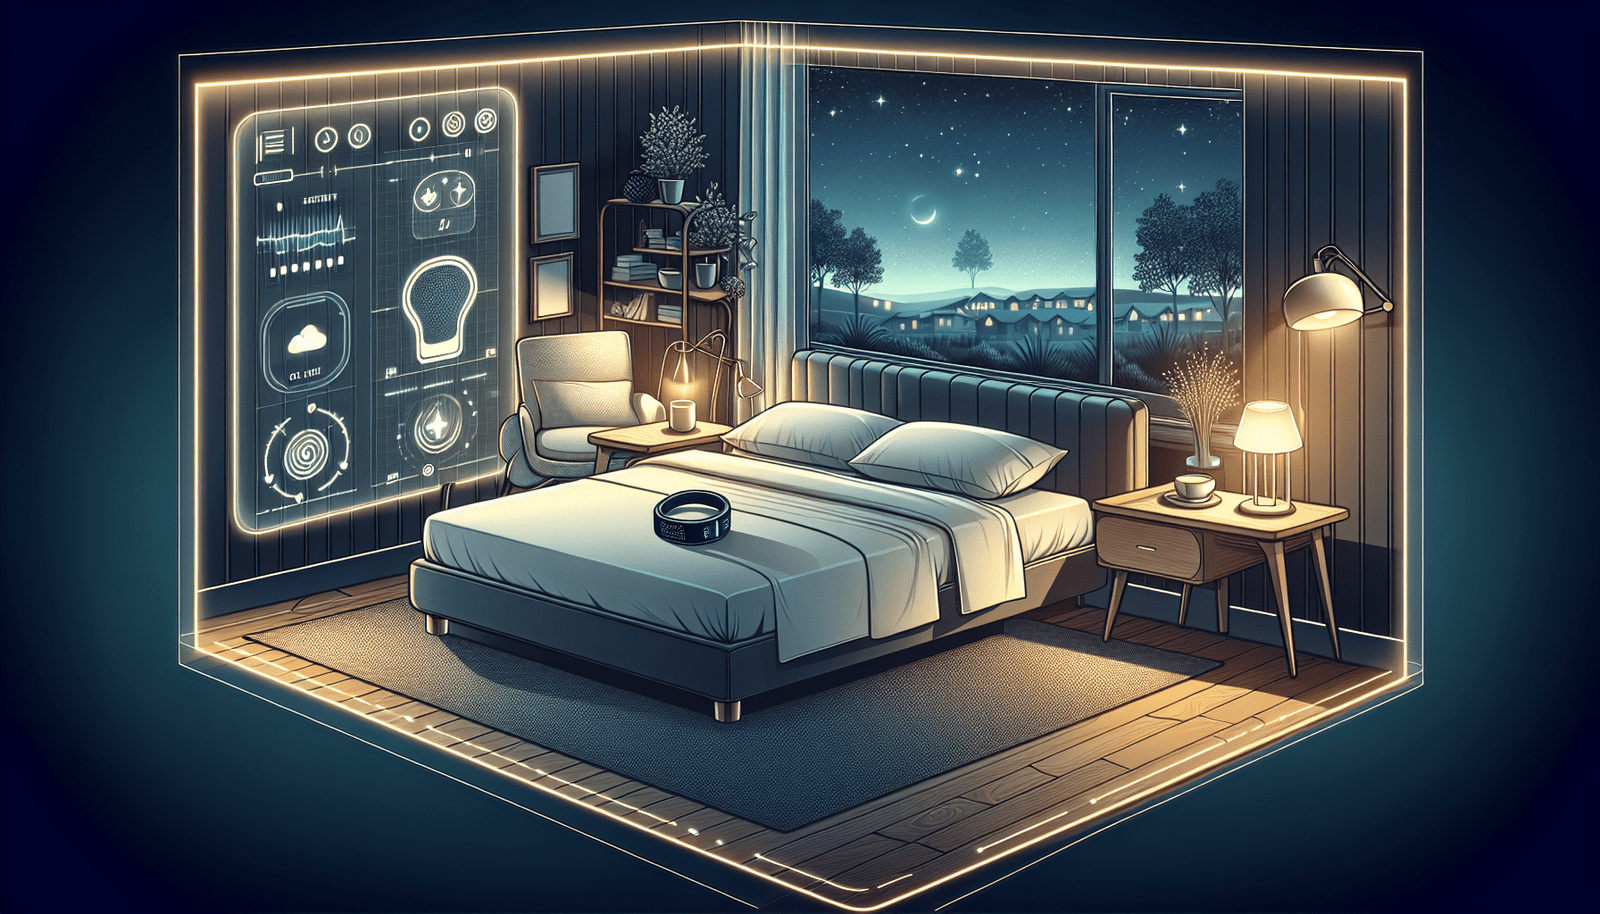 How Can Technology Help Improve Sleep?